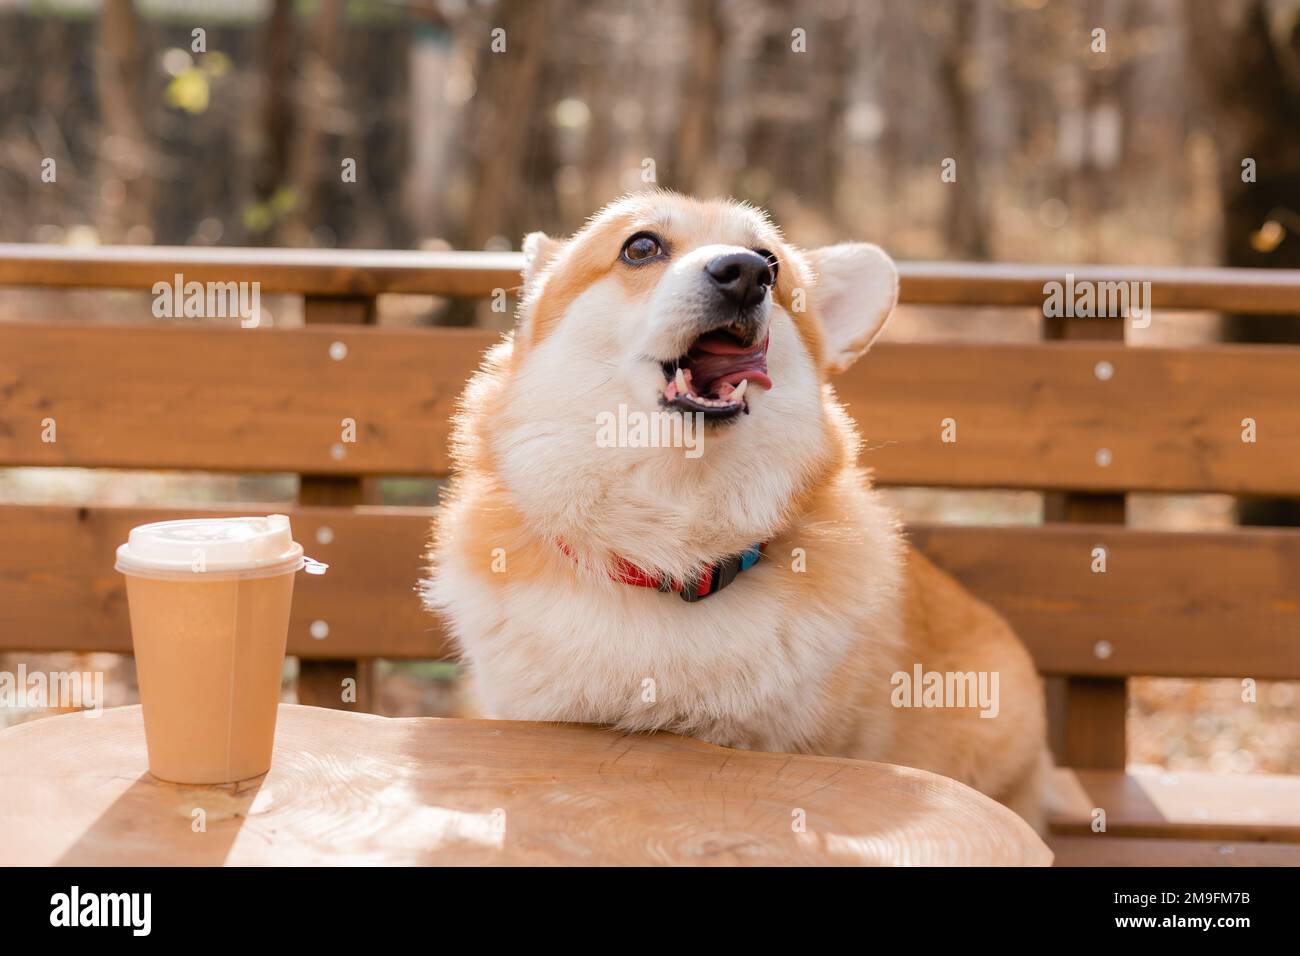 carino corgi cane su una passeggiata in autunno in un bar sulla veranda bere caffè. Caffetteria in cui sono ammessi i cani. Foto di alta qualità Foto Stock